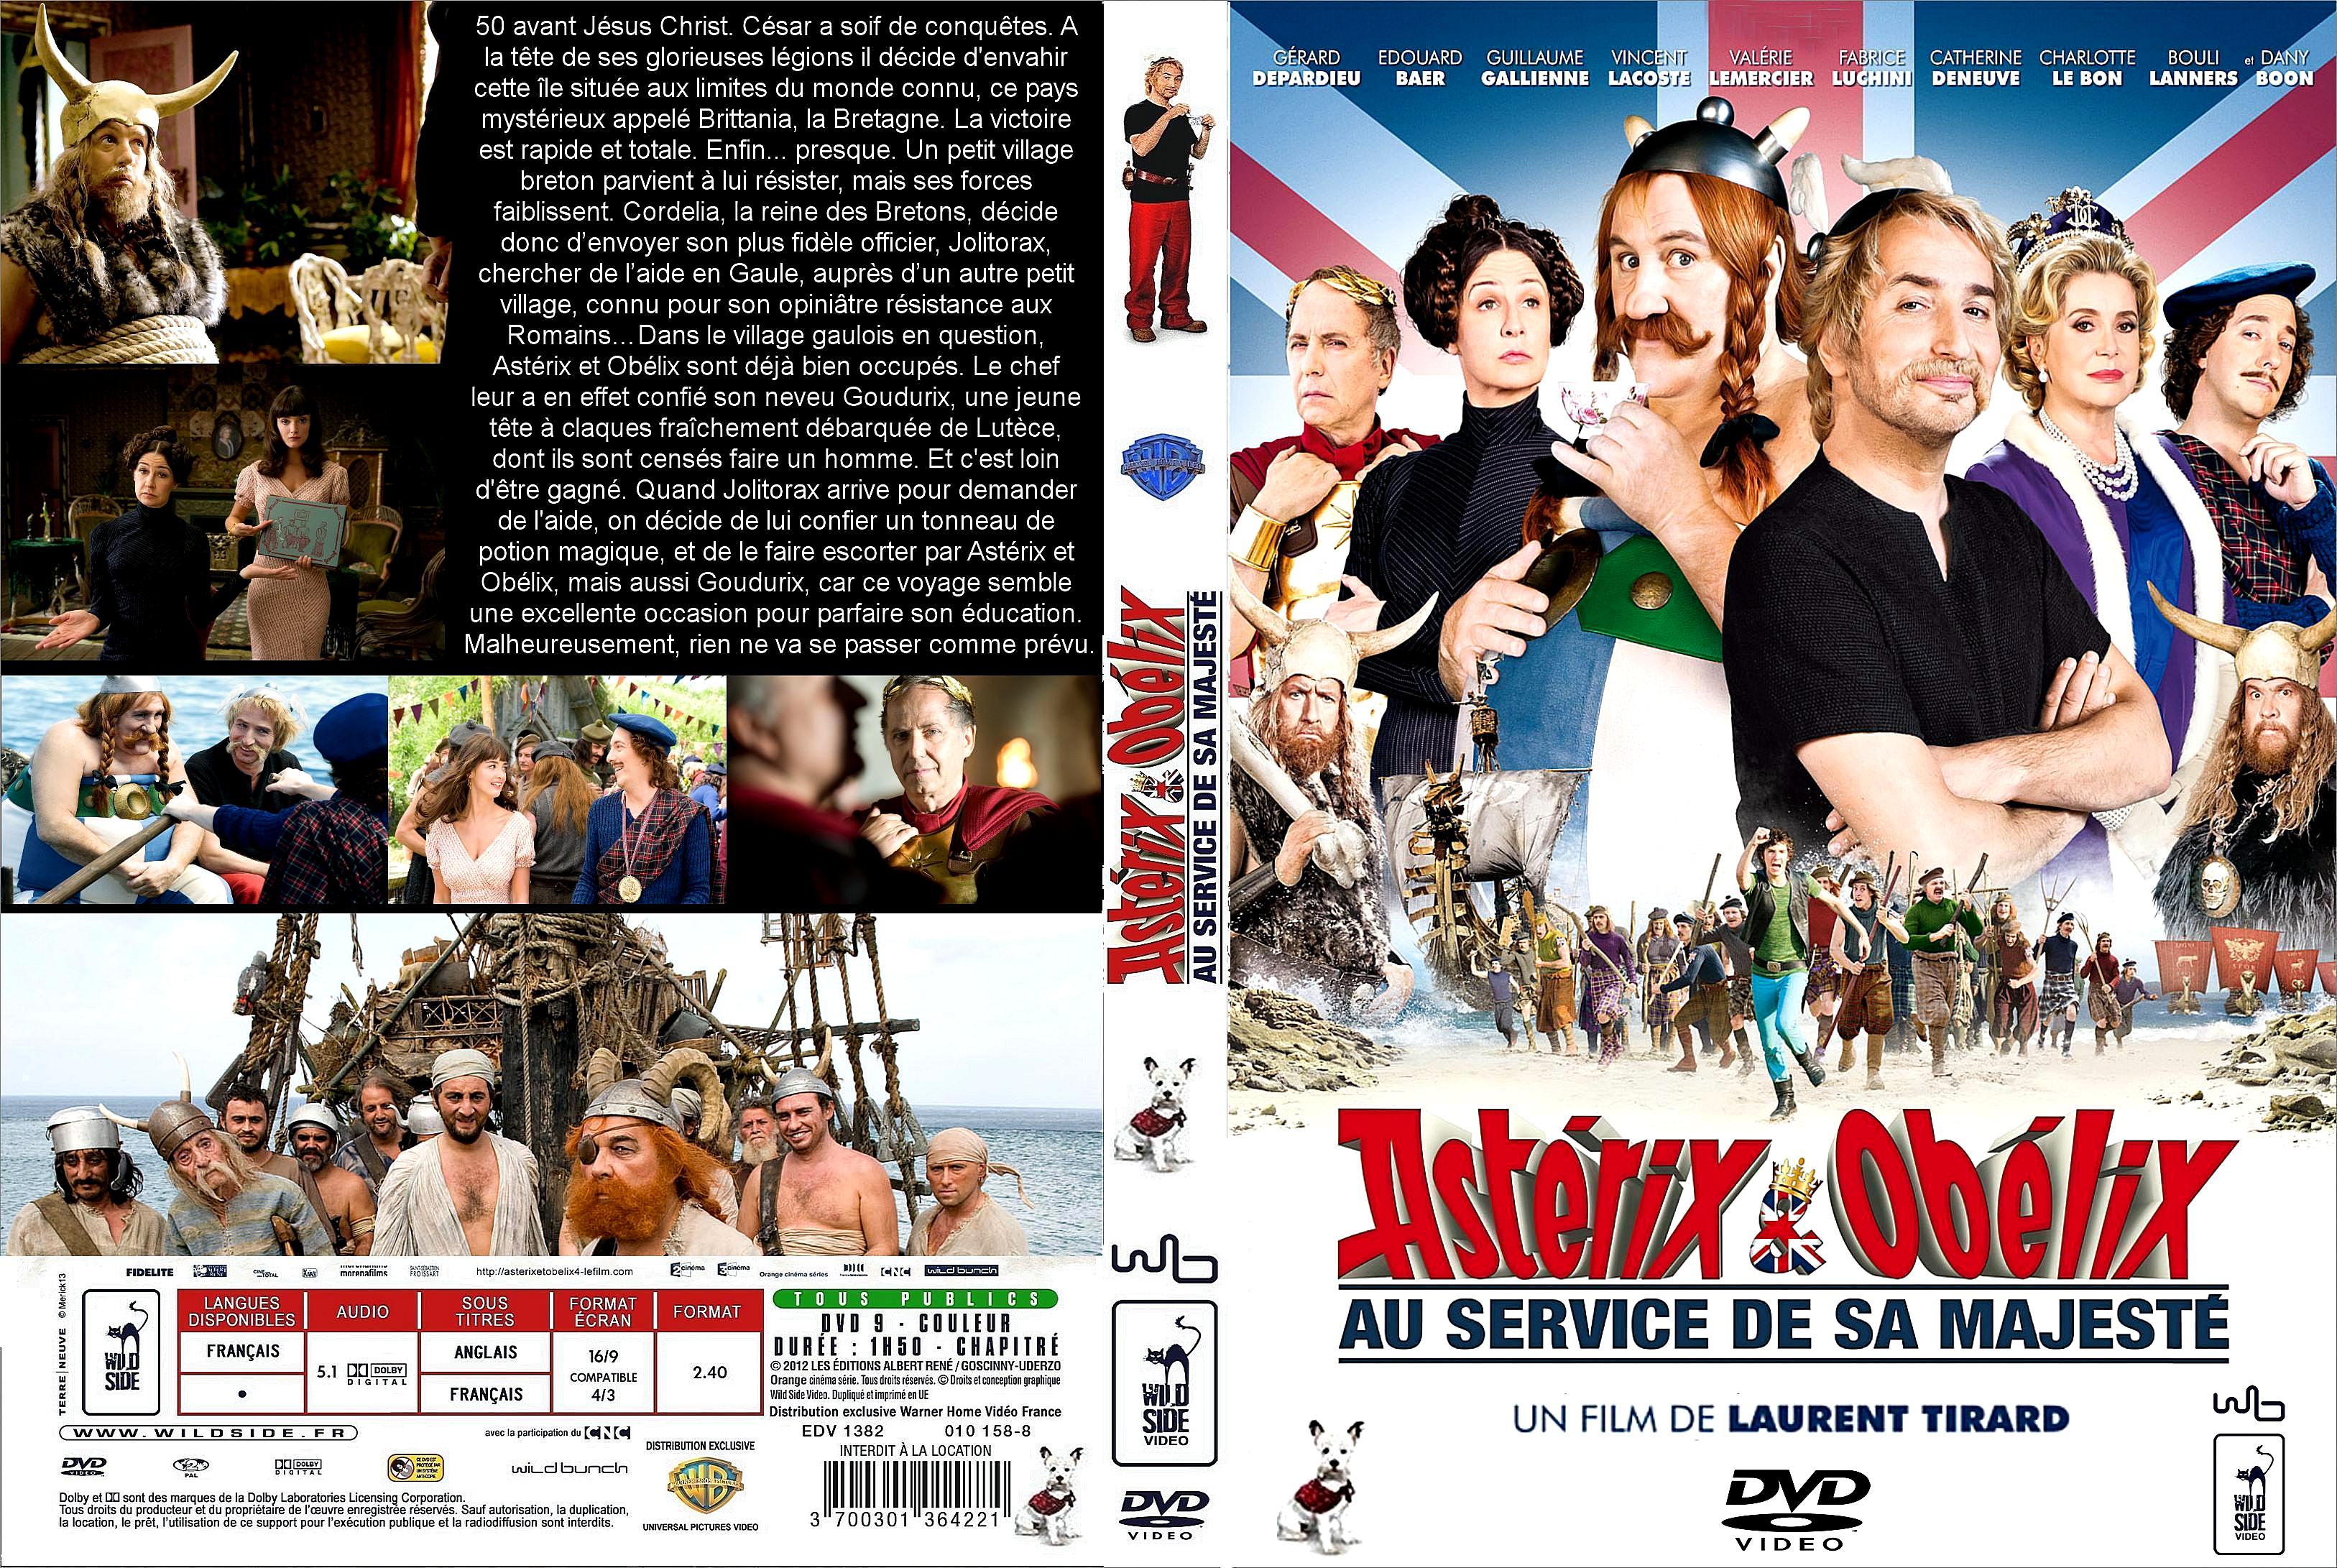 Jaquette DVD Astrix et Oblix: Au service de sa Majest custom